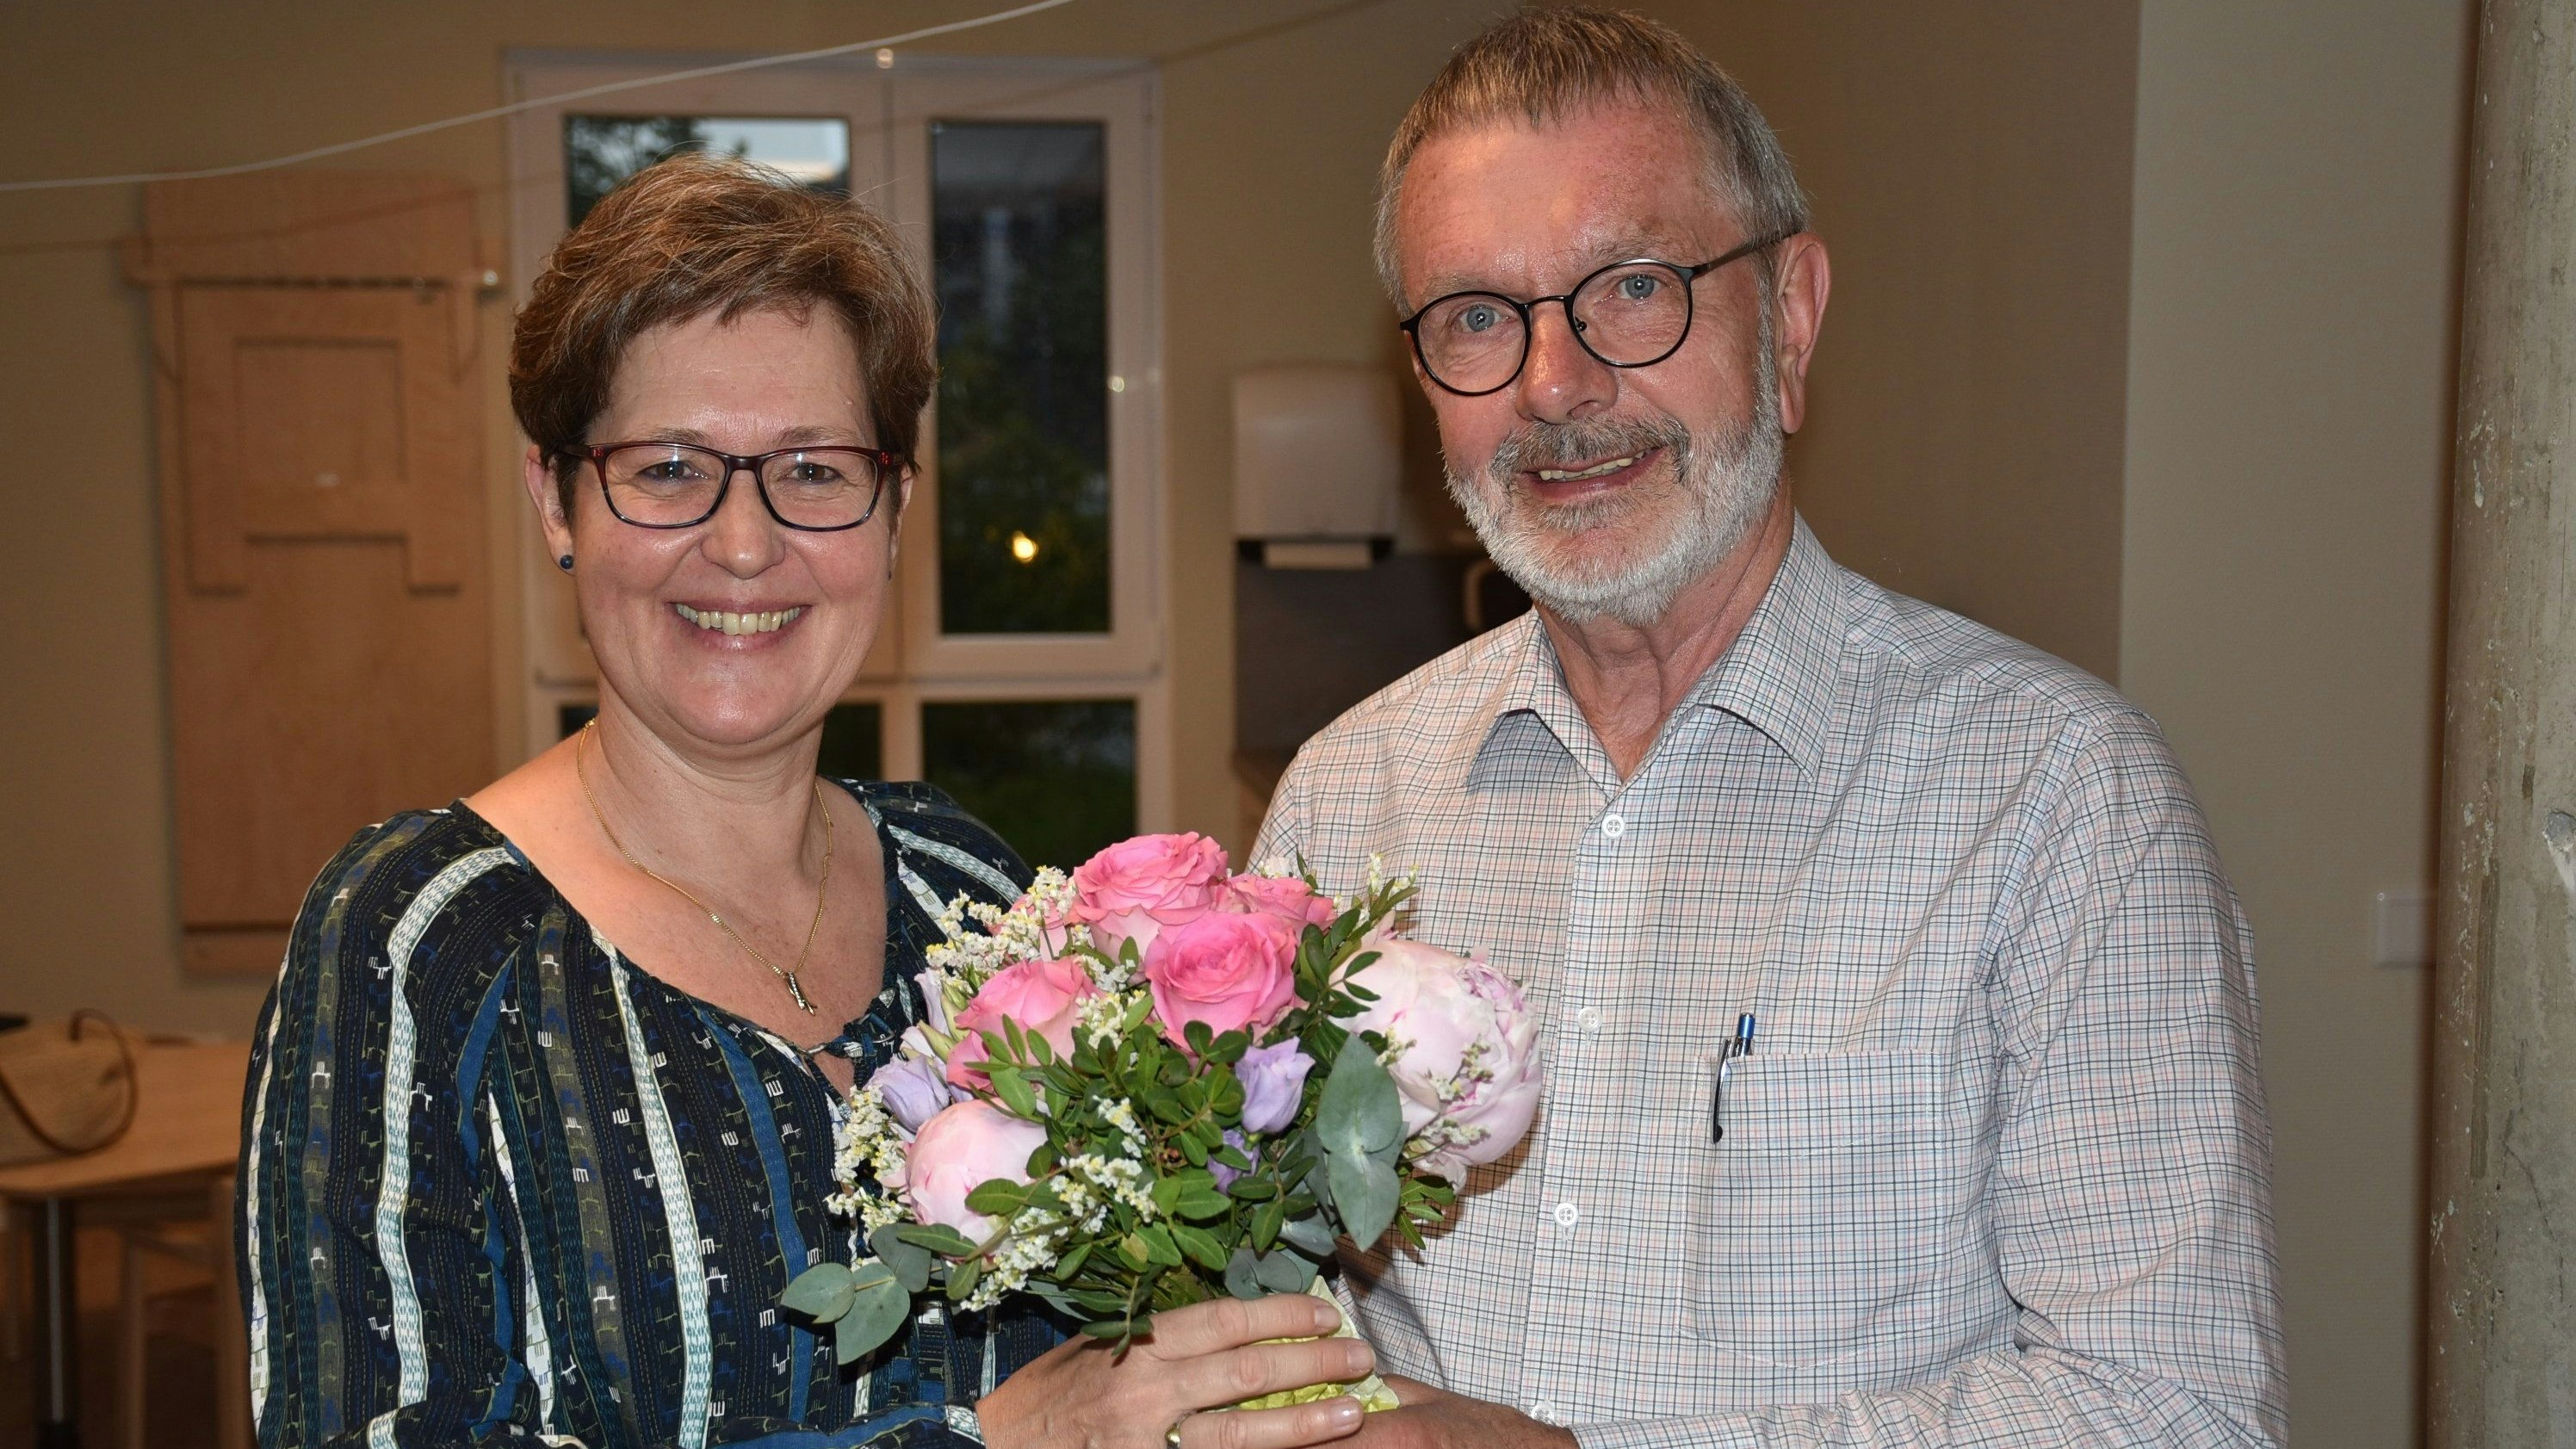 Wiederwahl: Dieter Brockmann gratulierte Anja von Lilienfeld-Toal mit einem Blumenstrauß.&nbsp; Foto: Lammert